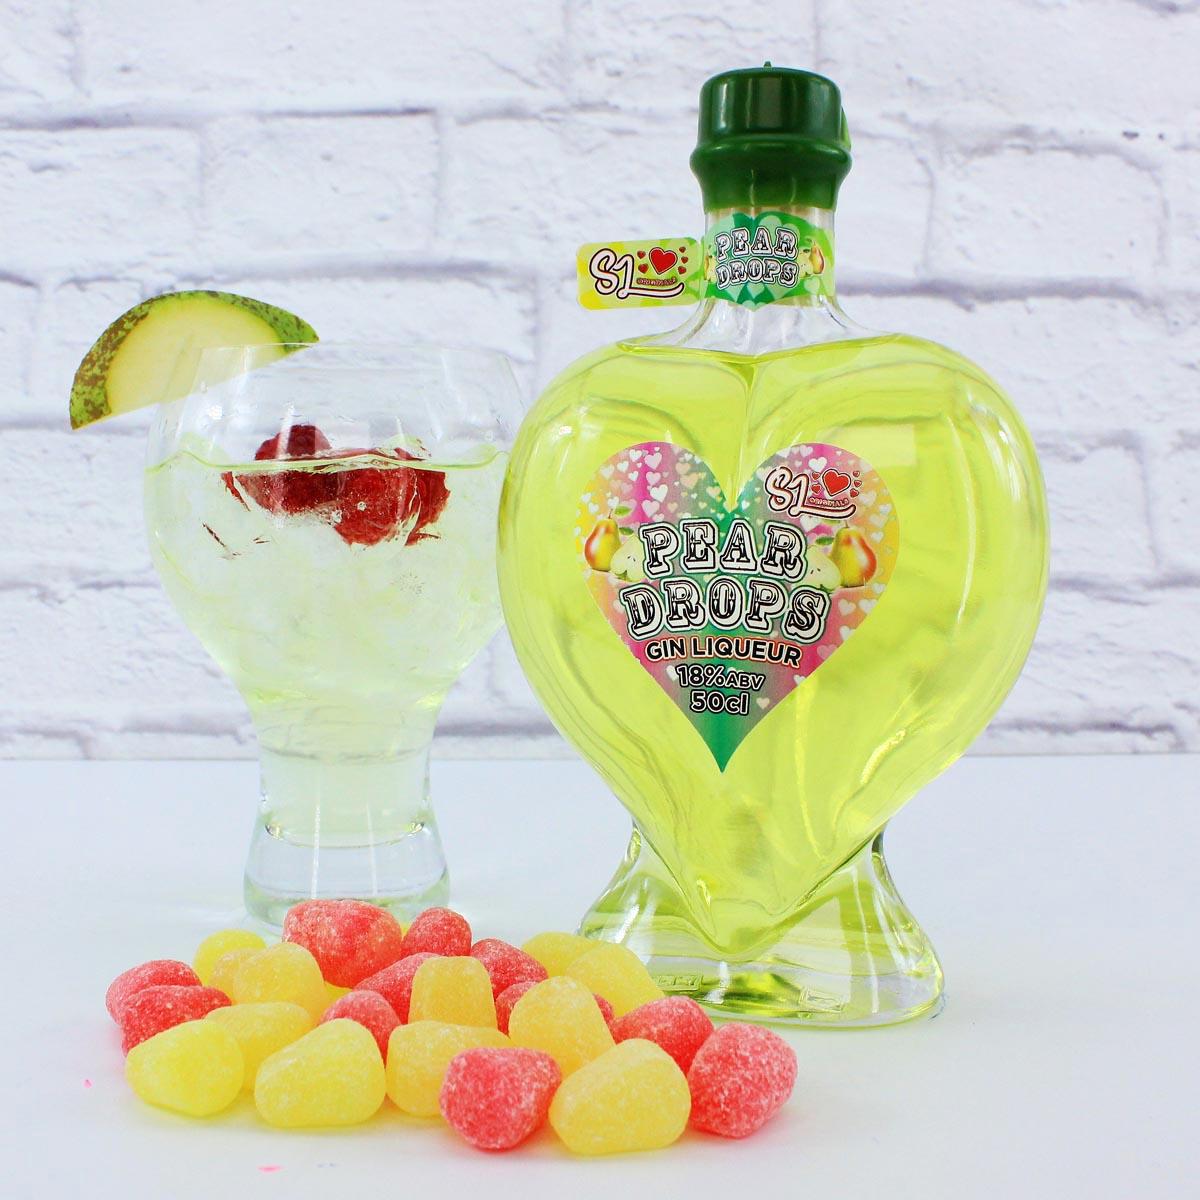 Sweet Little Pear Drops Gin Liqueur 50cl